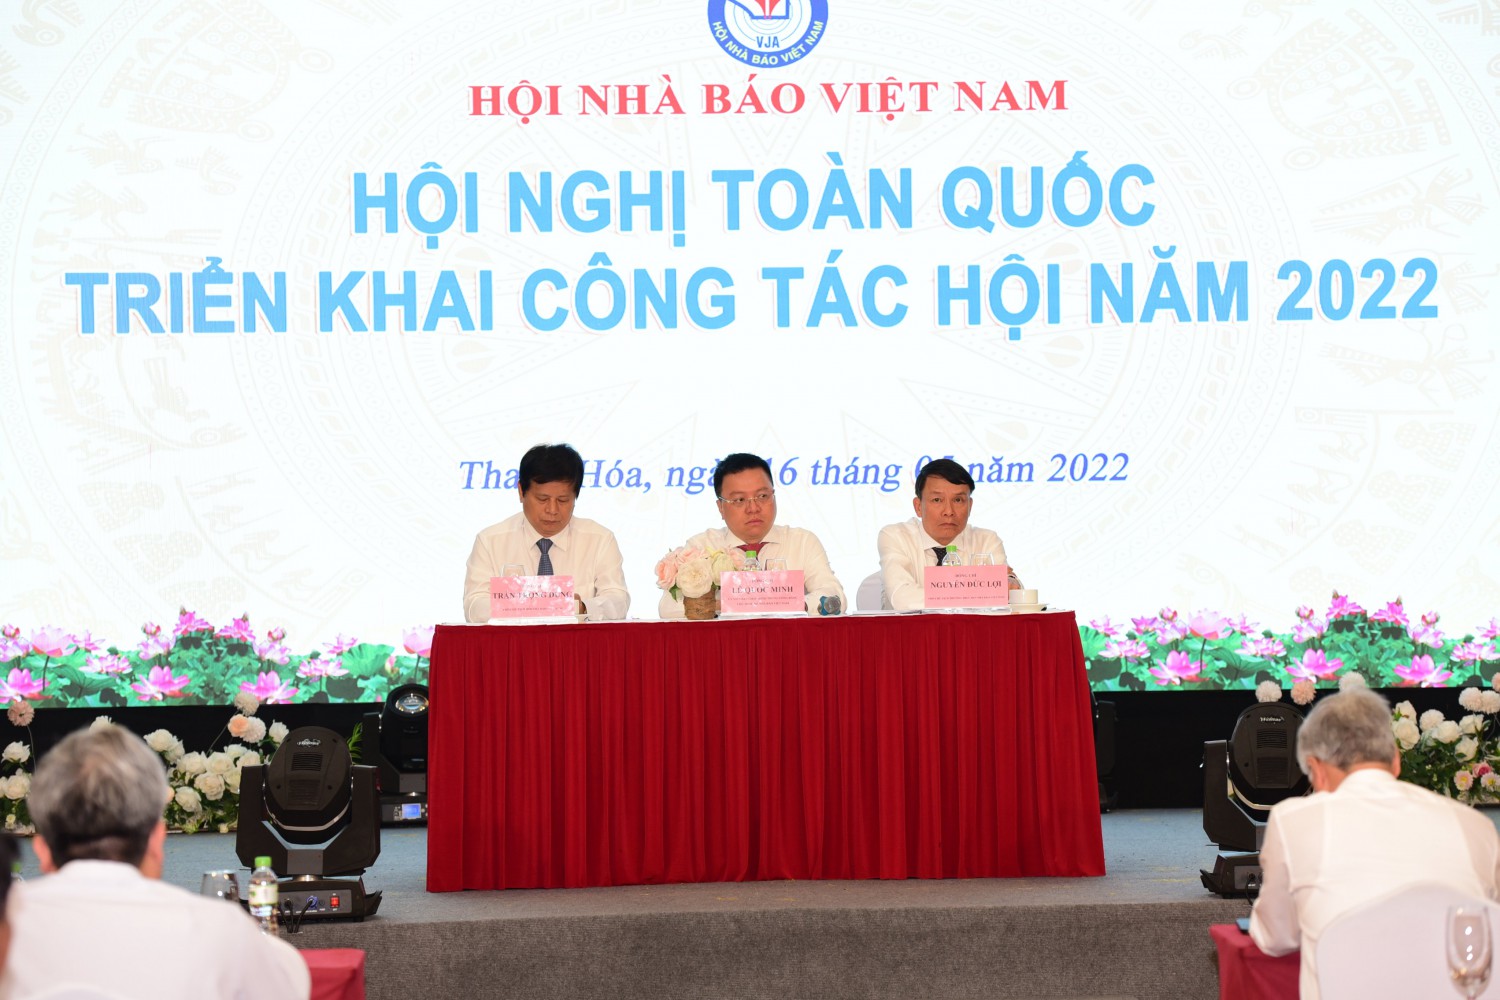 Đổi mới nội dung, phương pháp hoạt động của Hội Nhà báo tỉnh nhằm thu hút hội viên Hội Nhà báo Việt Nam hoạt động báo chí trên địa bàn tỉnh Khánh Hòa